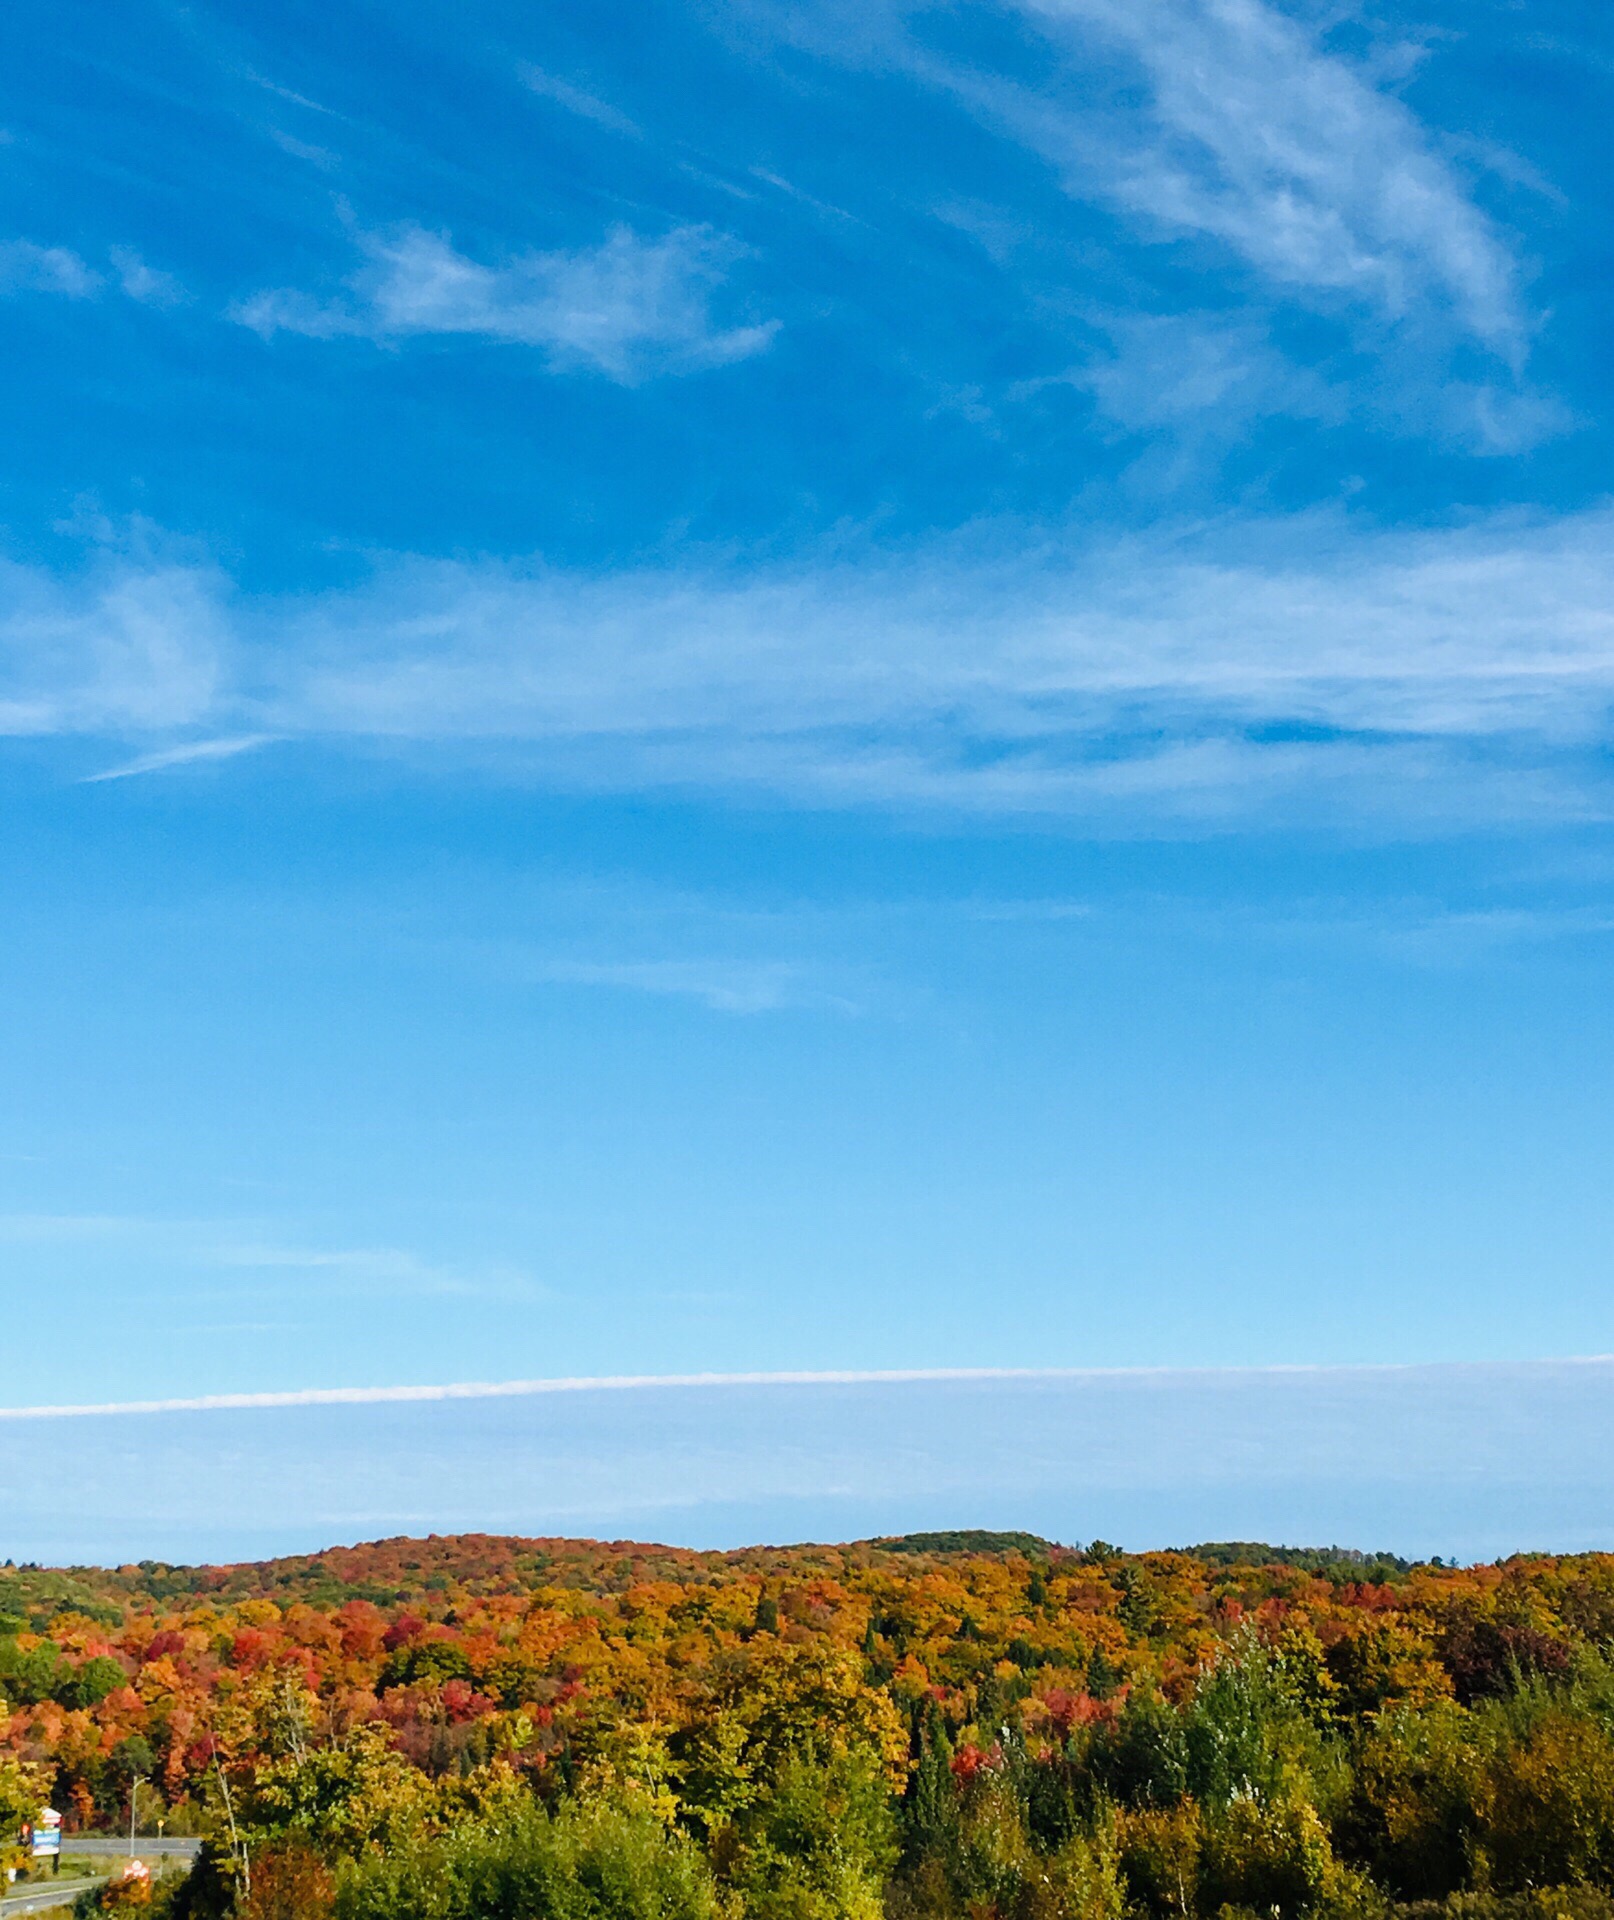 加拿大阿岗昆的秋色是是最迷人的北美赏枫胜地之一，天高气爽，色彩缤纷，如果有机会也适时的话一定要选择自